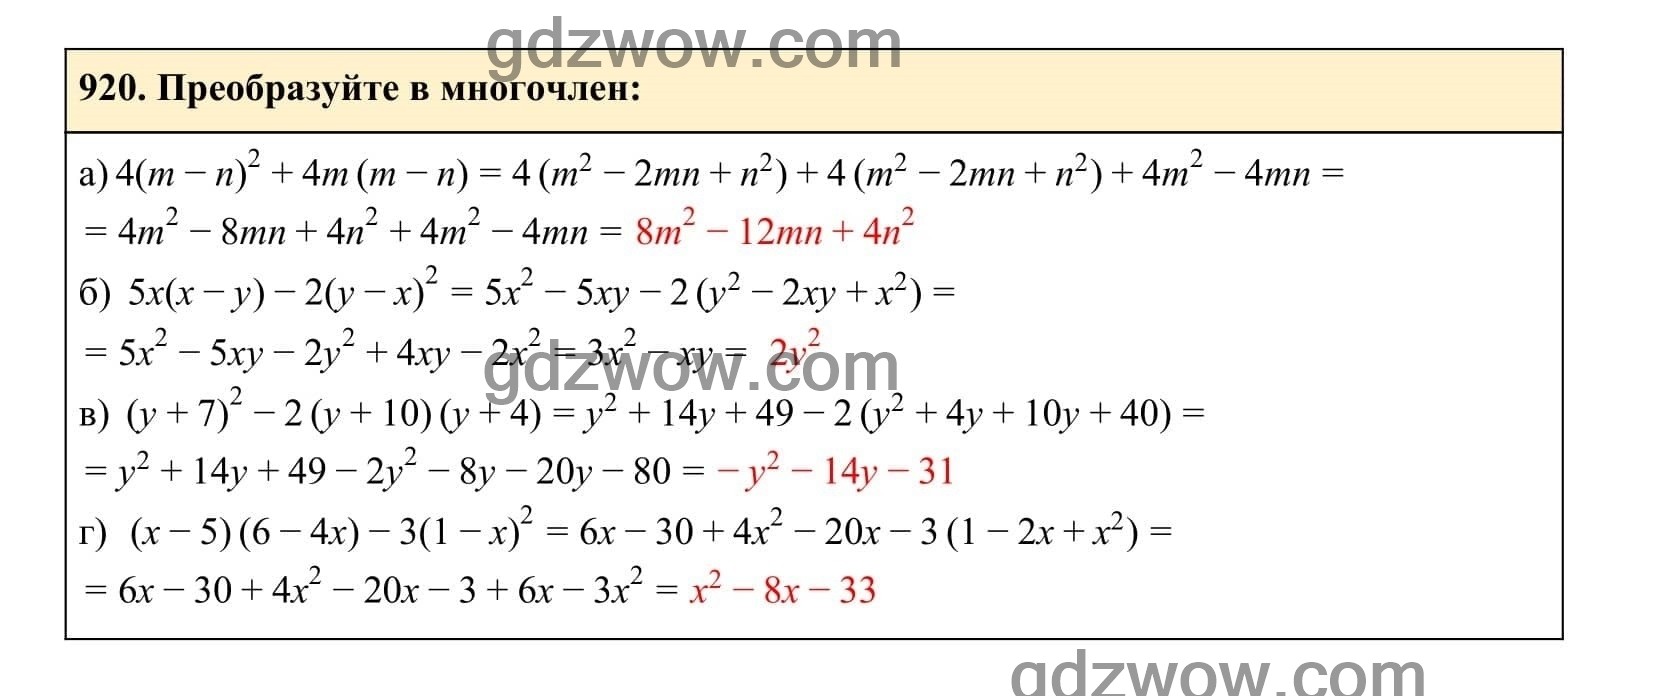 Упражнение 920 - ГДЗ по Алгебре 7 класс Учебник Макарычев (решебник) - GDZwow